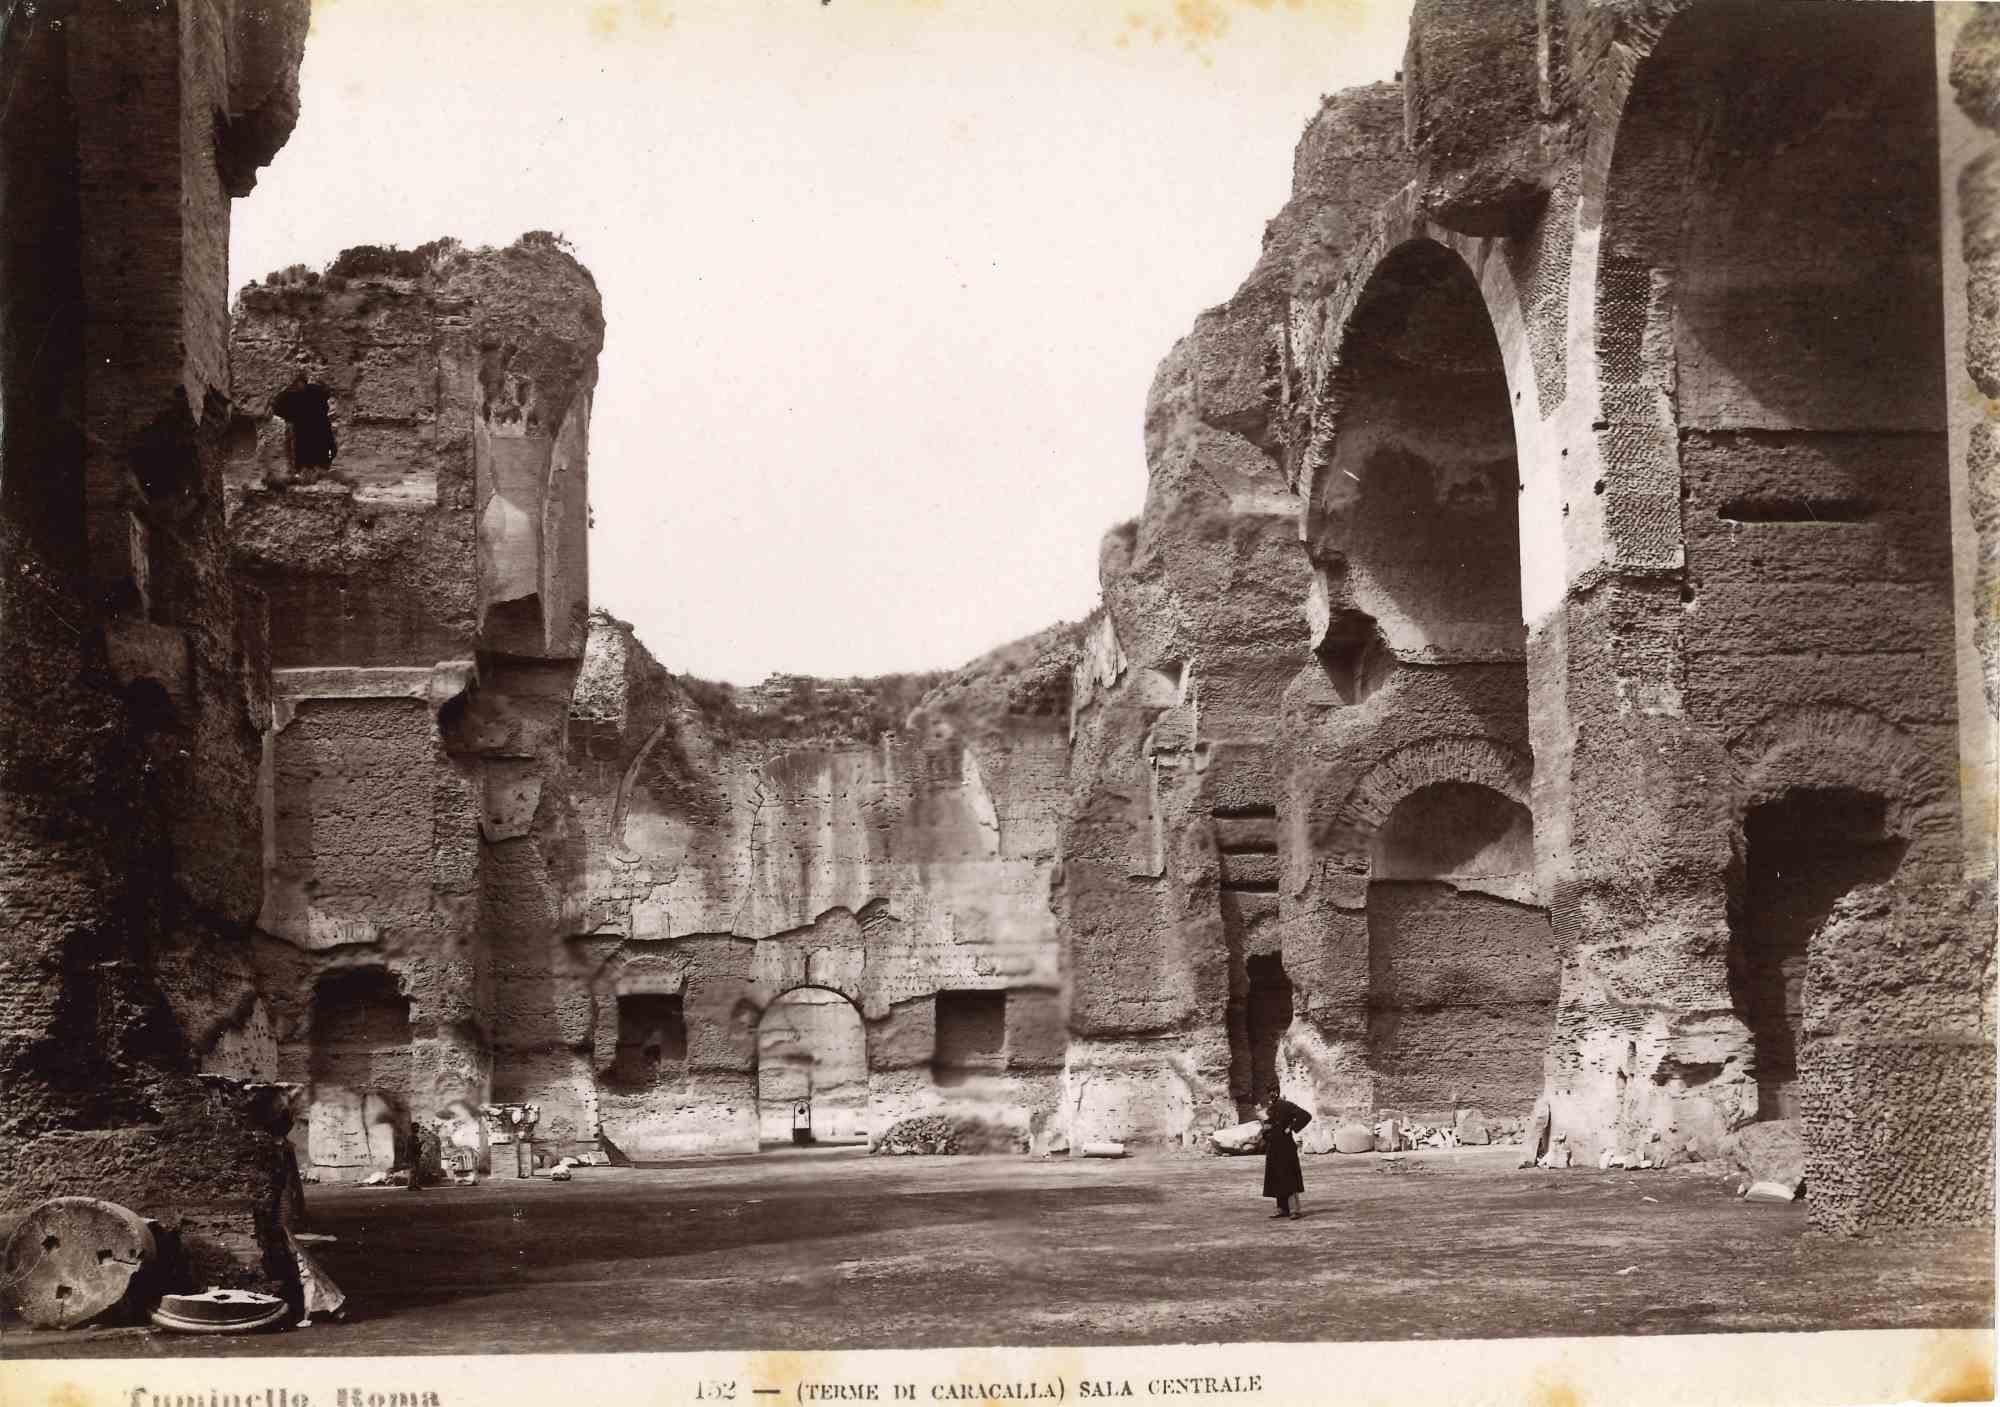 Les thermes de Caracalla est une photographie sépia vintage réalisée par Ludovico Tuminello au début du 20e siècle.

Titre sur la partie inférieure.

Bon état, sauf quelques rousseurs.